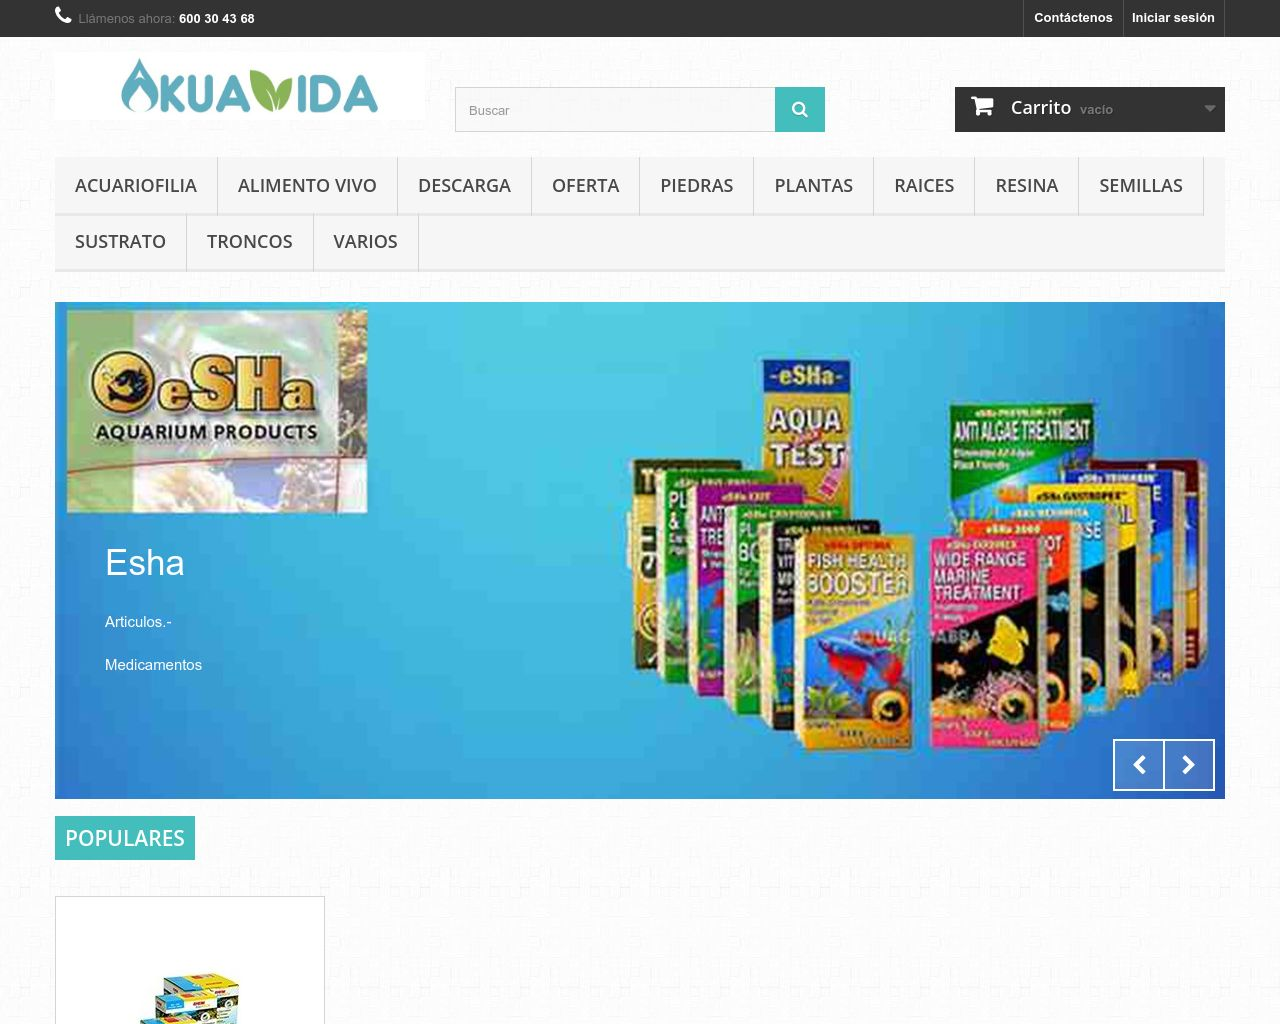 El sitio de la imagen akuavida.es en 1280x1024